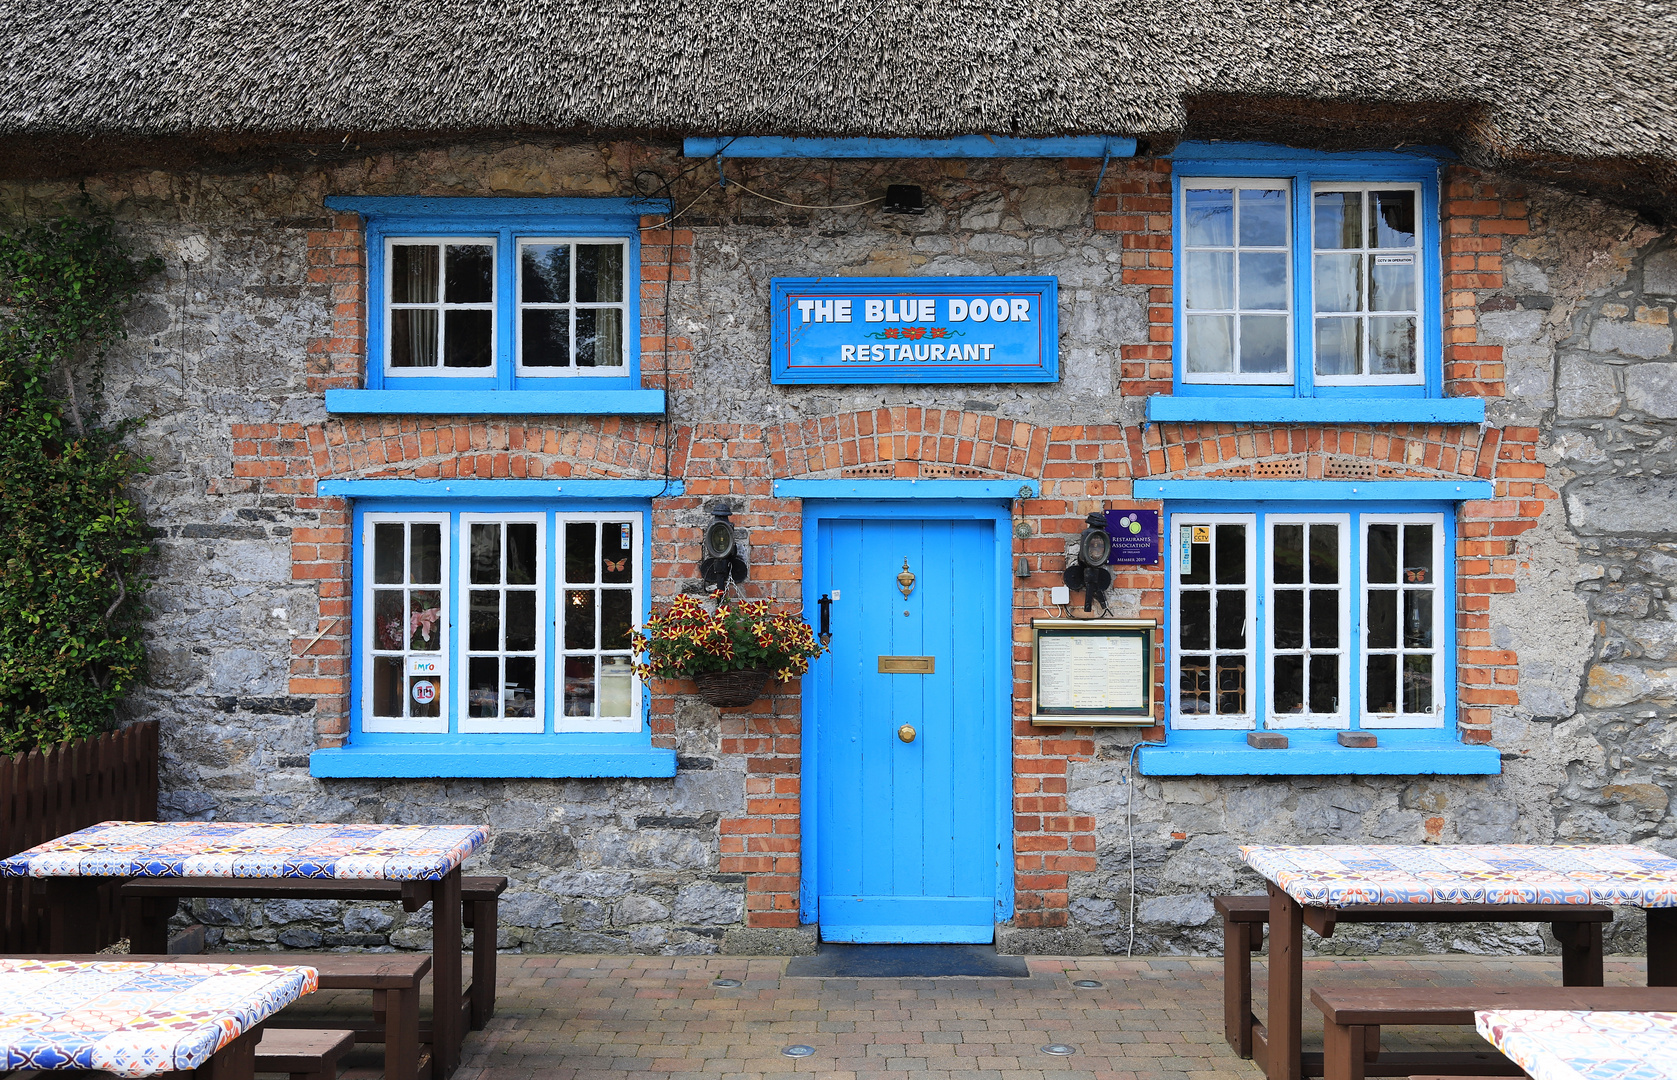 The Blue Door Restaurant